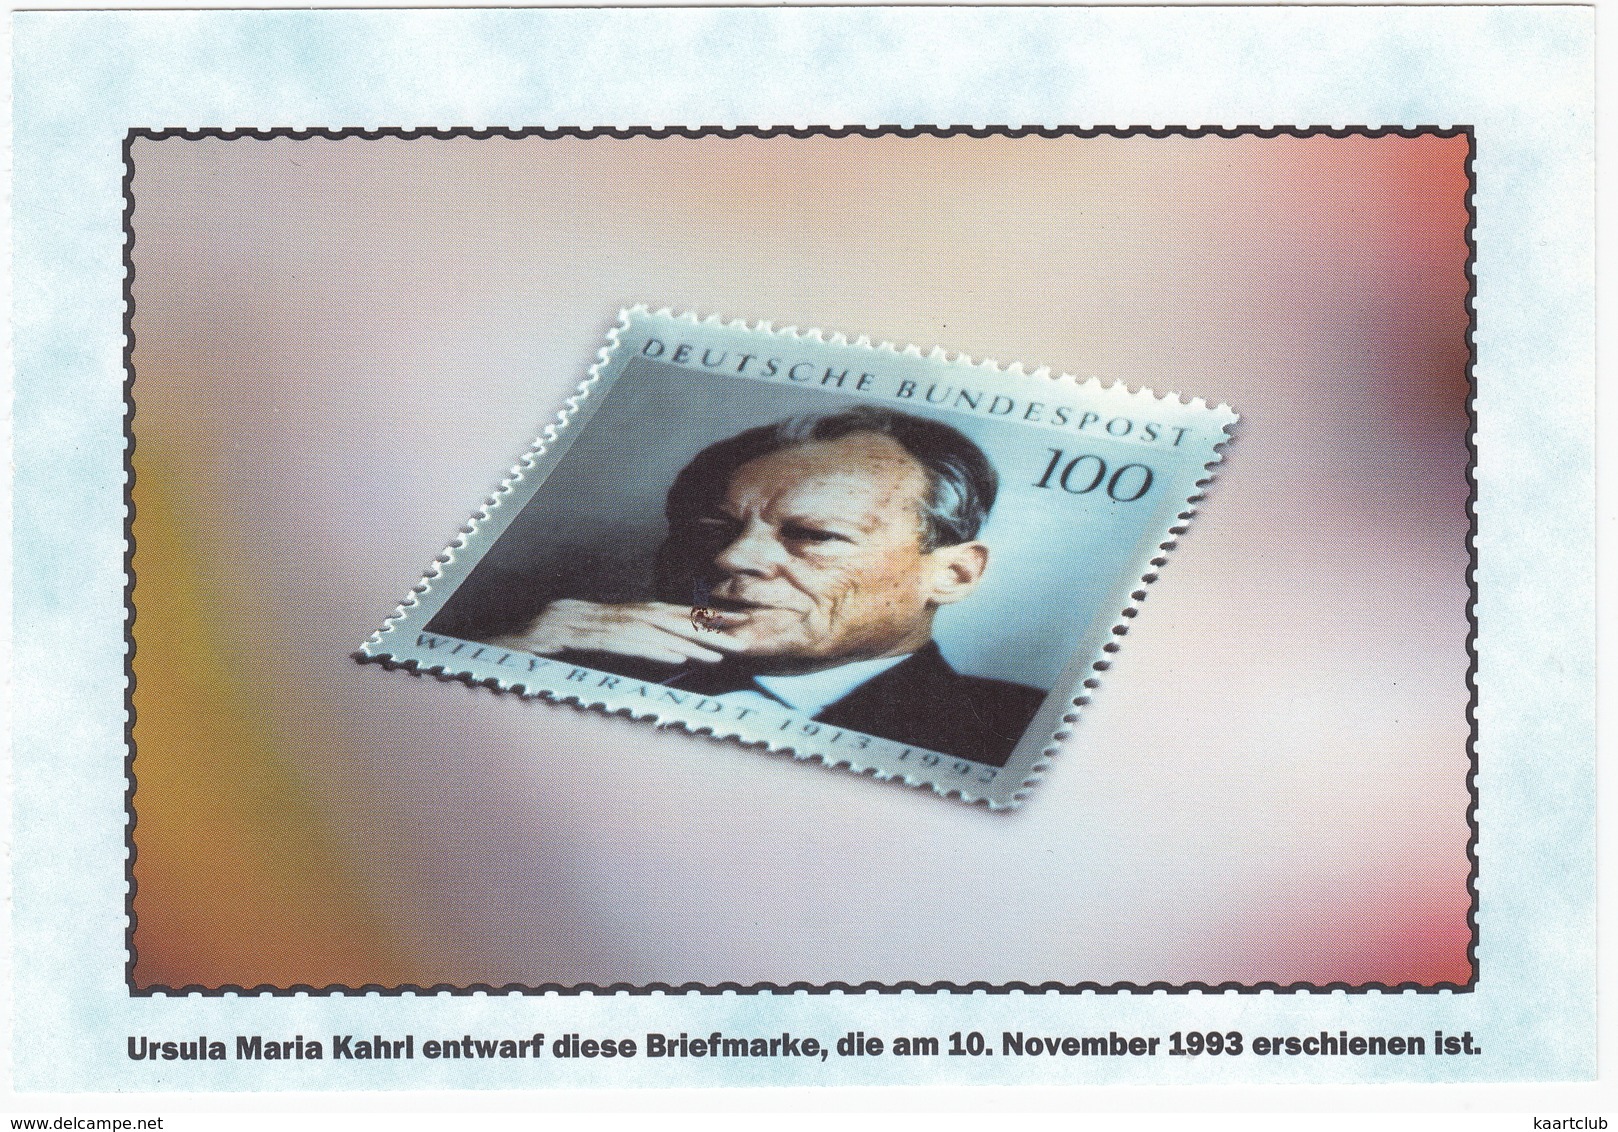 100 Pf. Briefmarke - Ursula M. Kahrl Entwarf Diese Briefmarke, Die Am 16.November 1993 Erschienen Ist - Sammler-Service - Stamps (pictures)